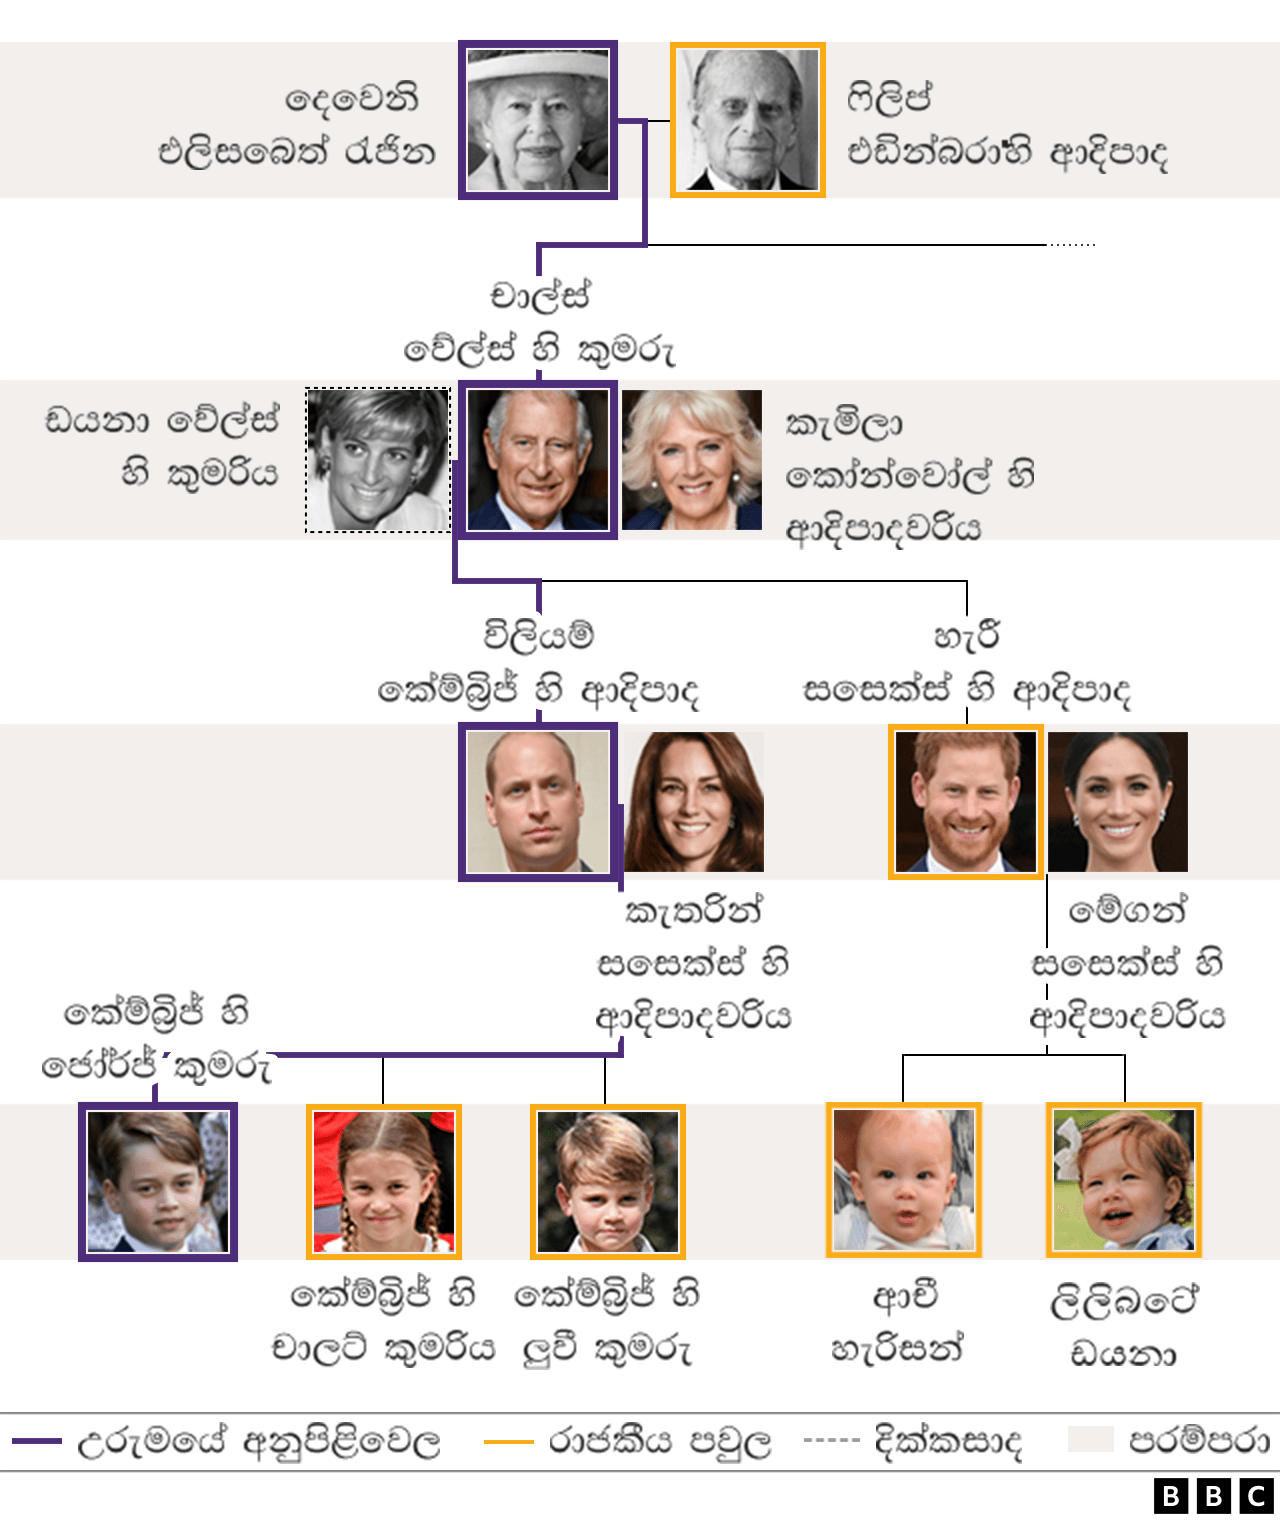  126656424 royal family tree succession sinhala bw 2x640 nc